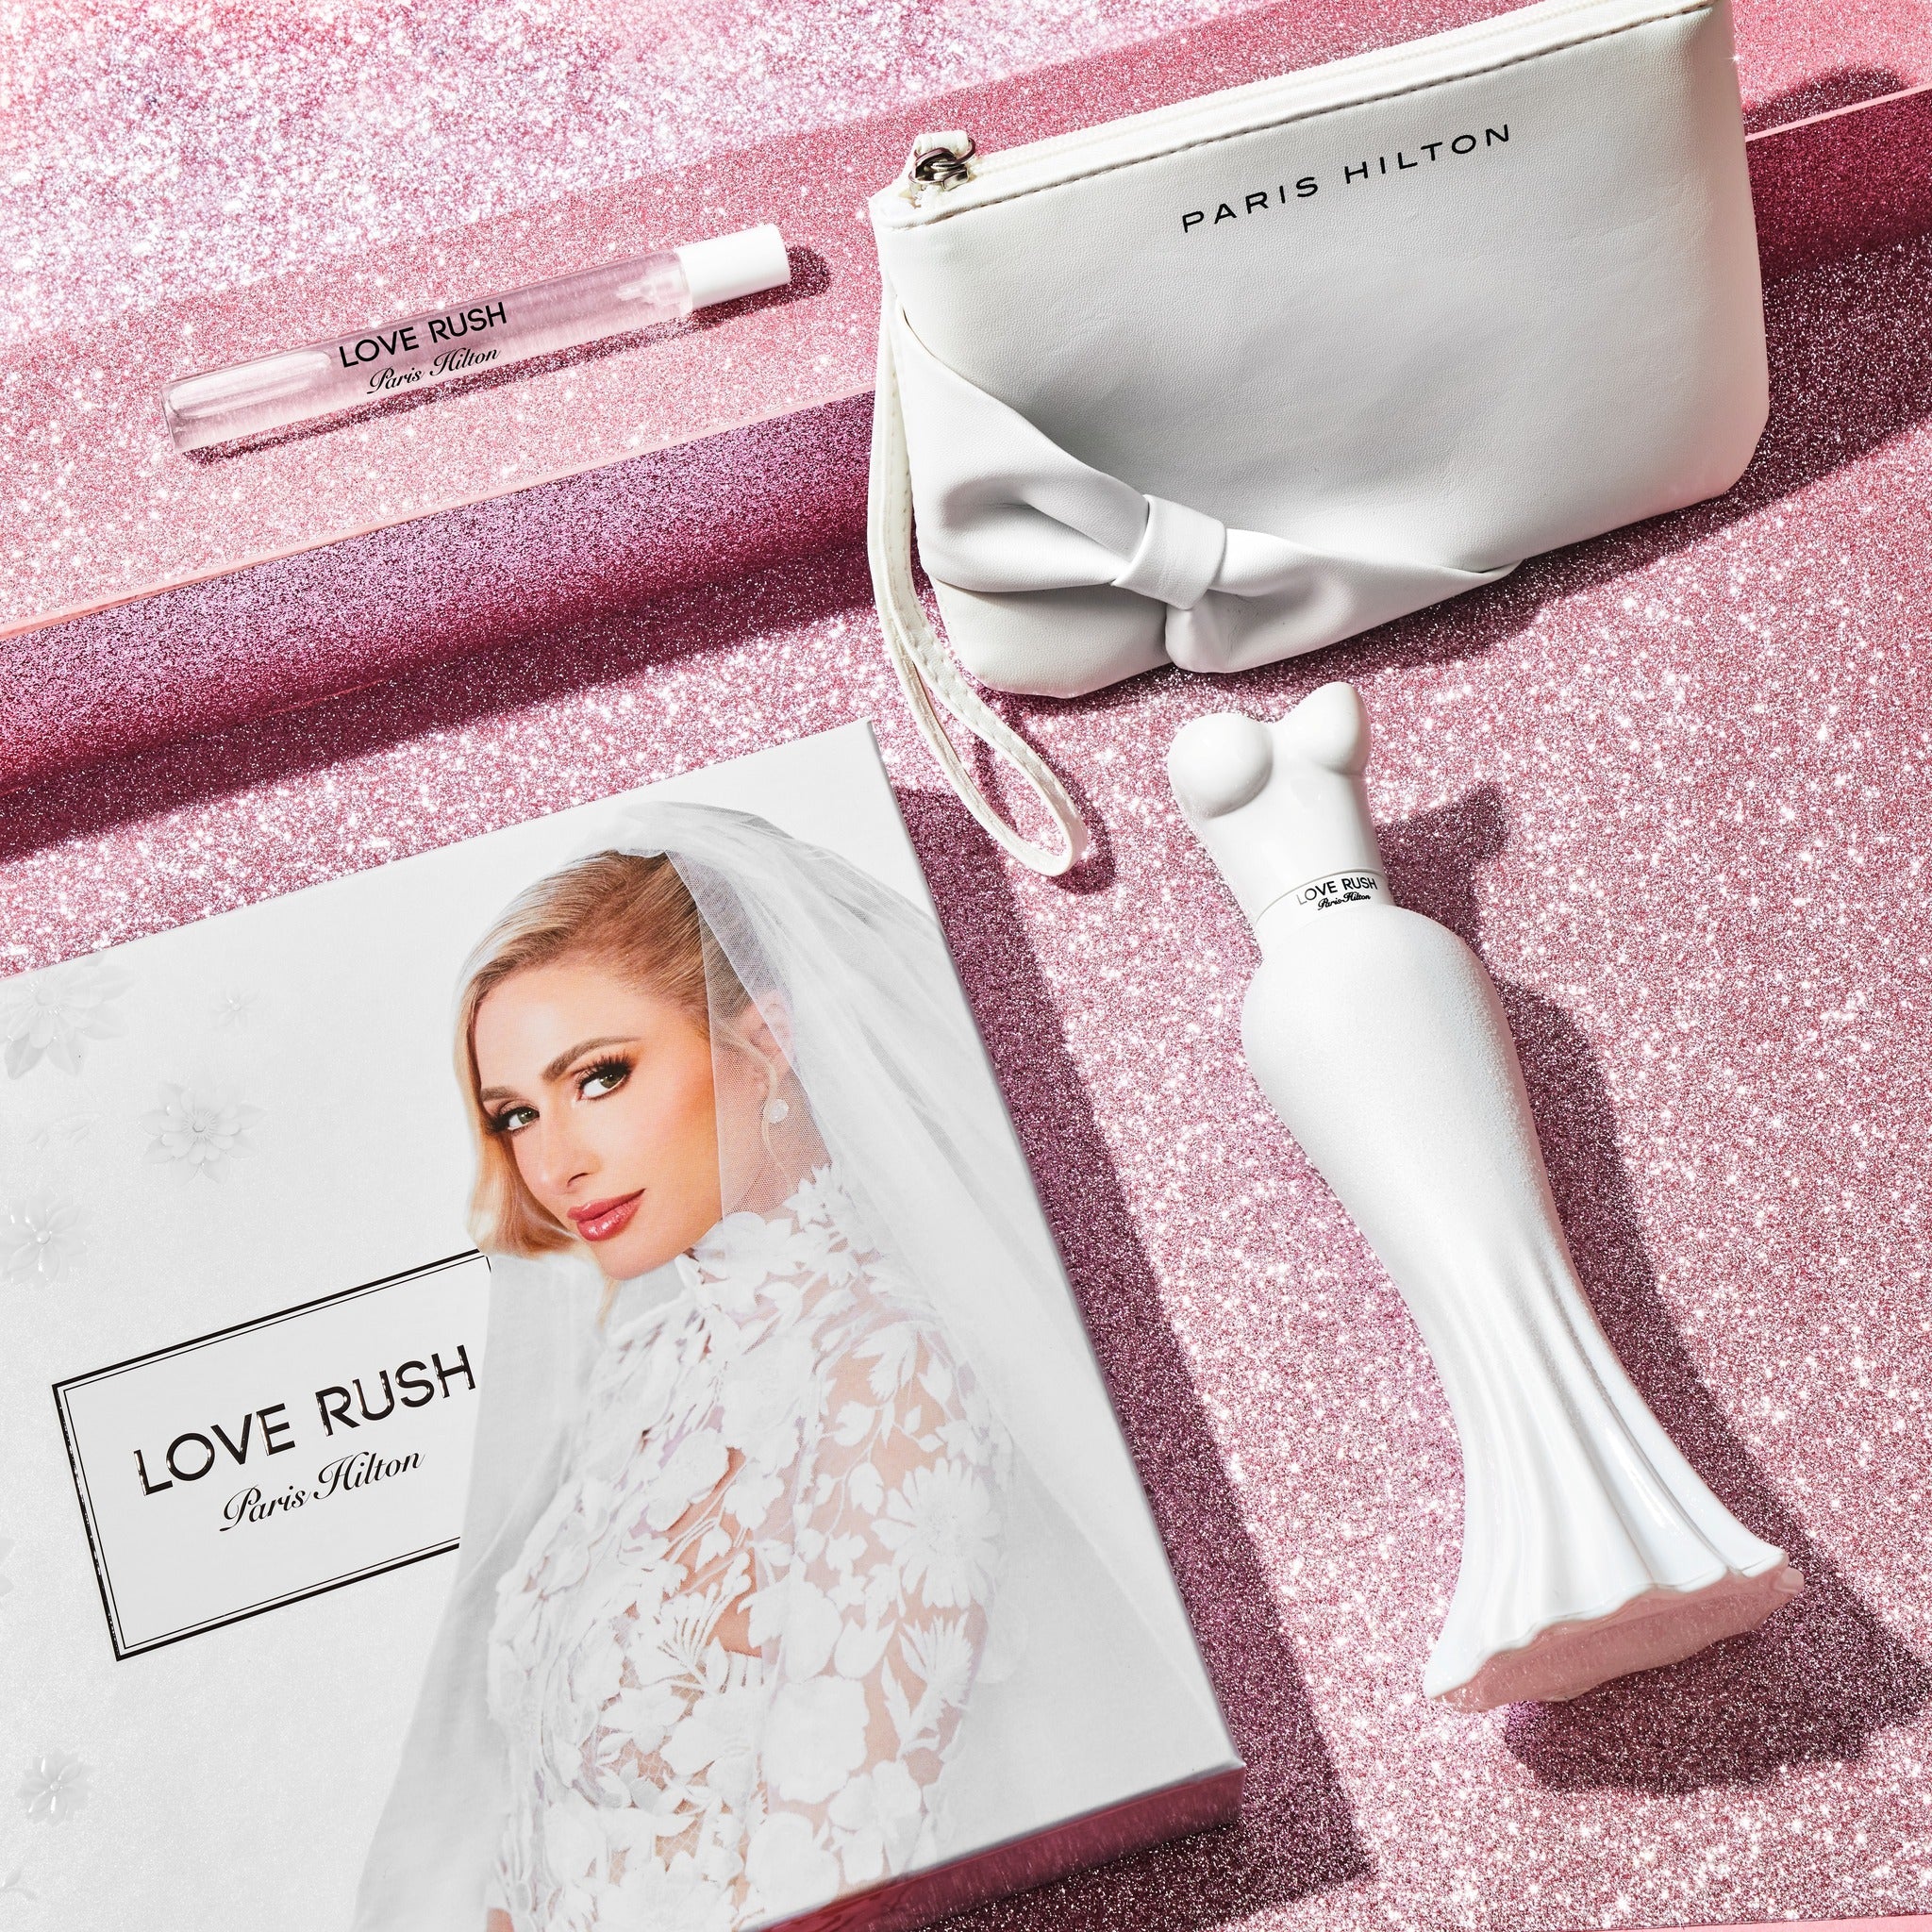 Paris Hilton Love Rush EDP & Pouch Collection | My Perfume Shop Australia